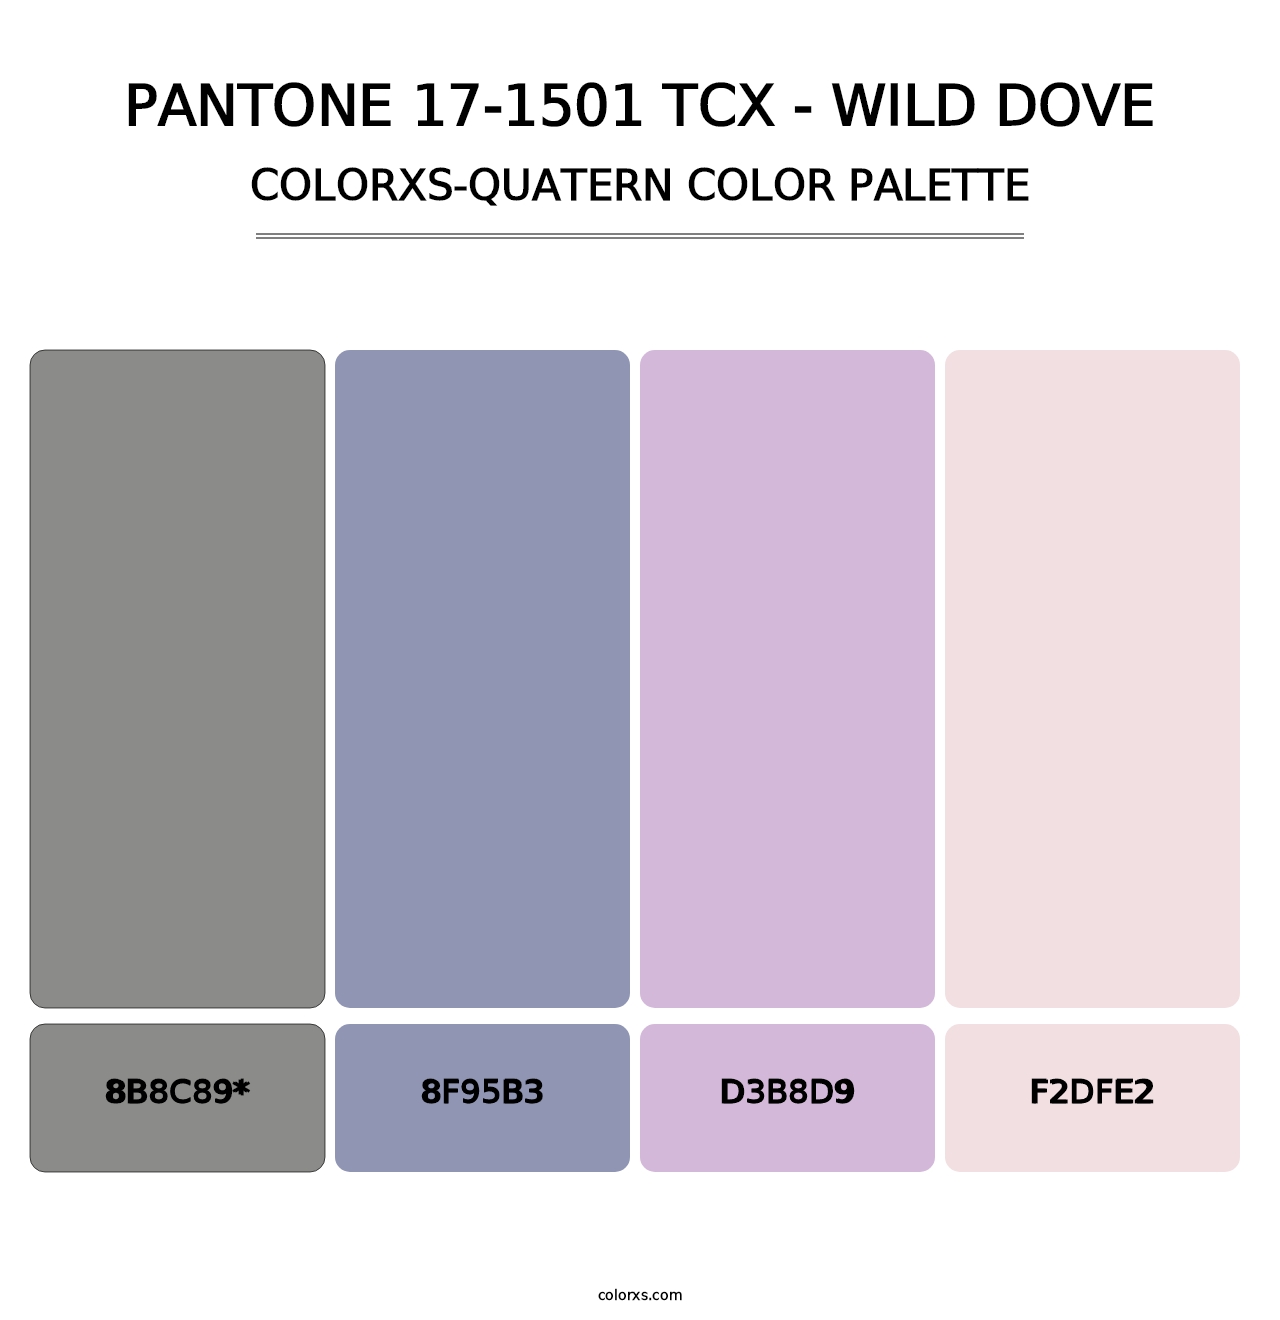 PANTONE 17-1501 TCX - Wild Dove - Colorxs Quatern Palette